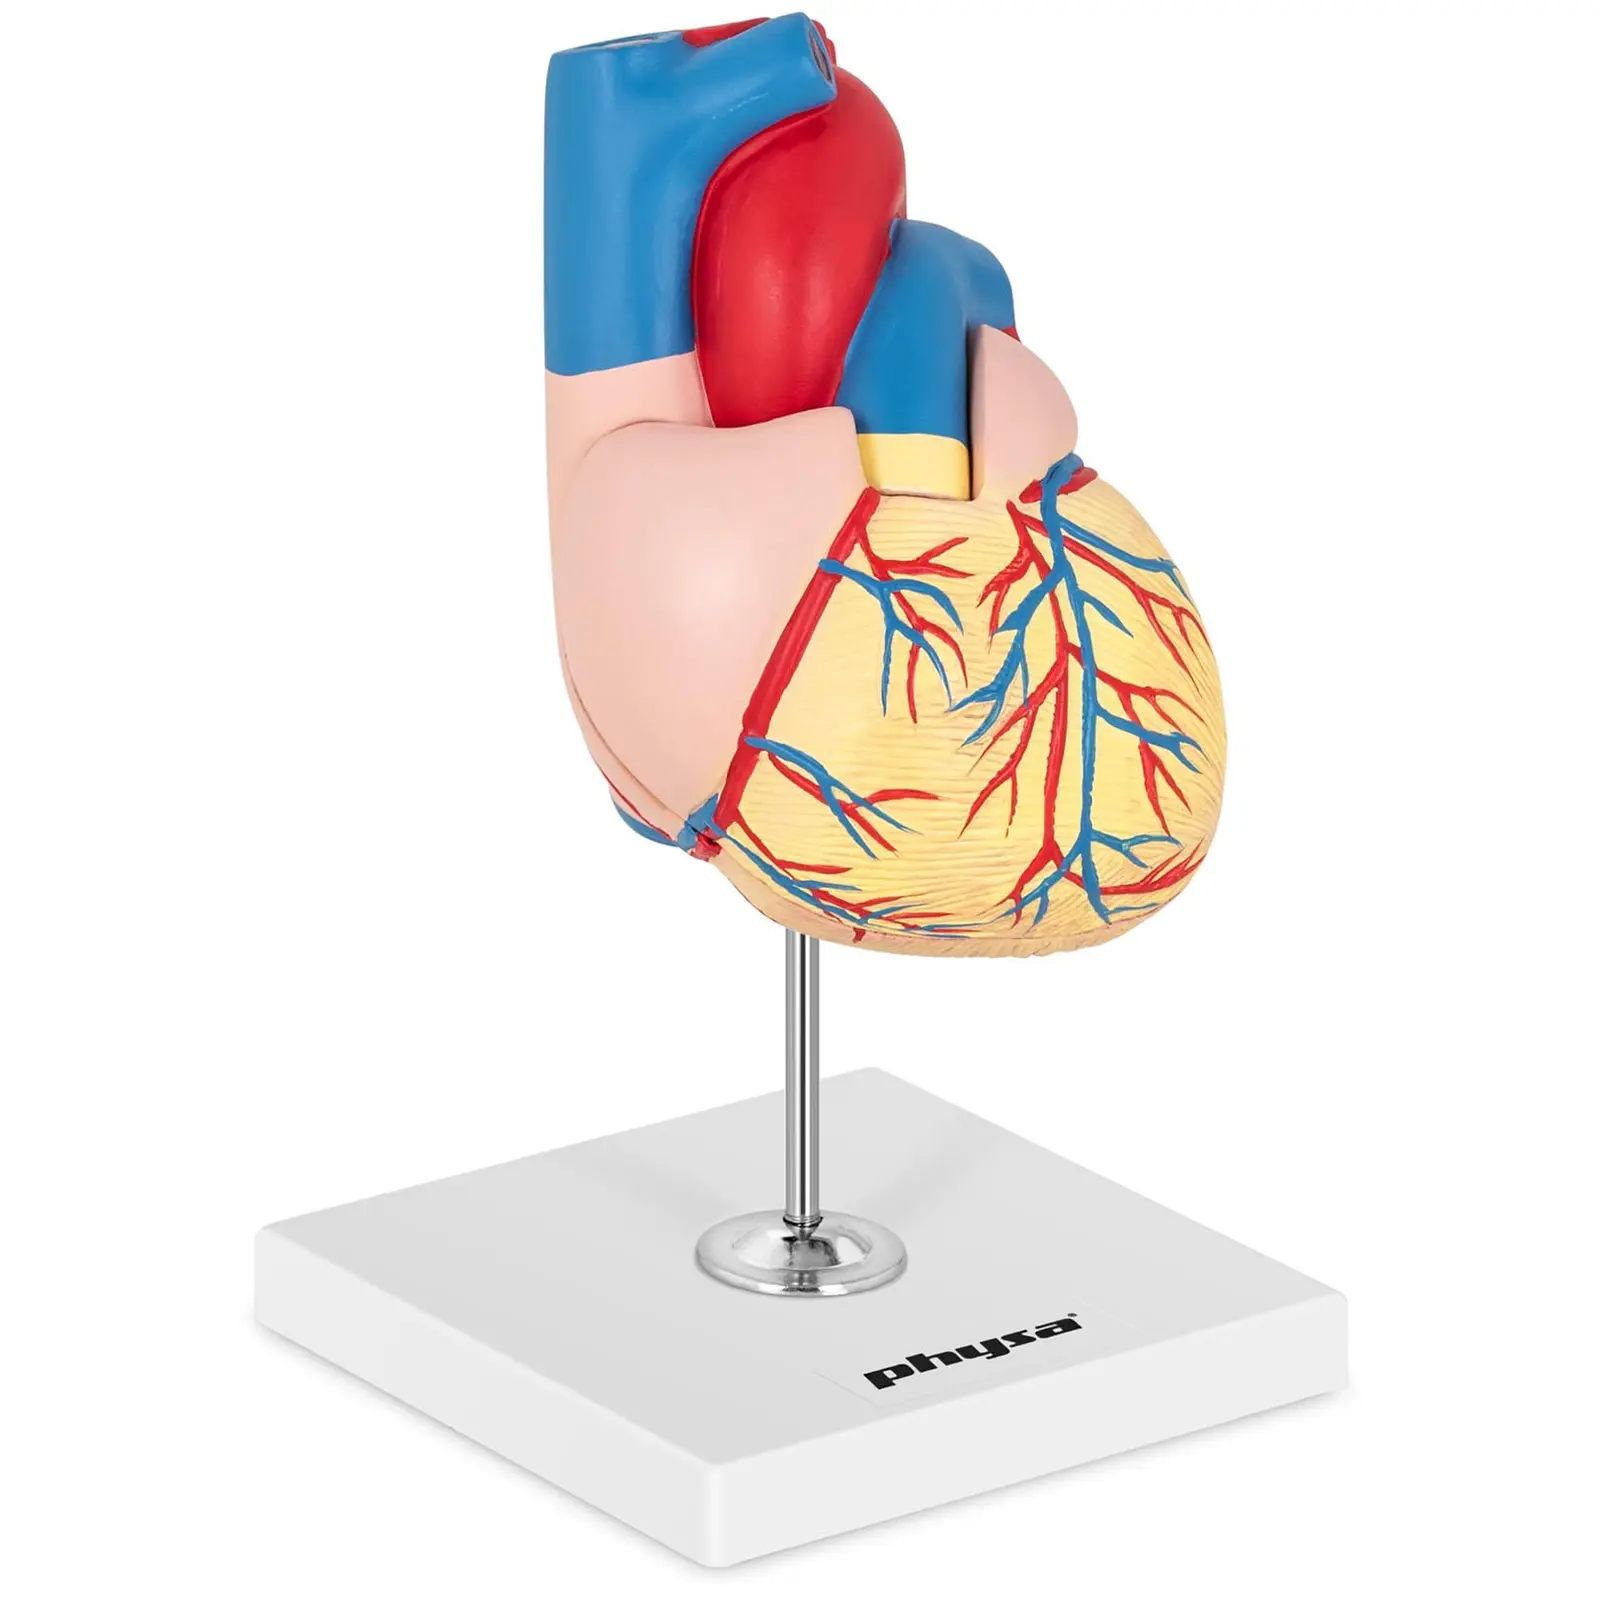 Modello cuore - Smontabile in due parti - Grandezza naturale